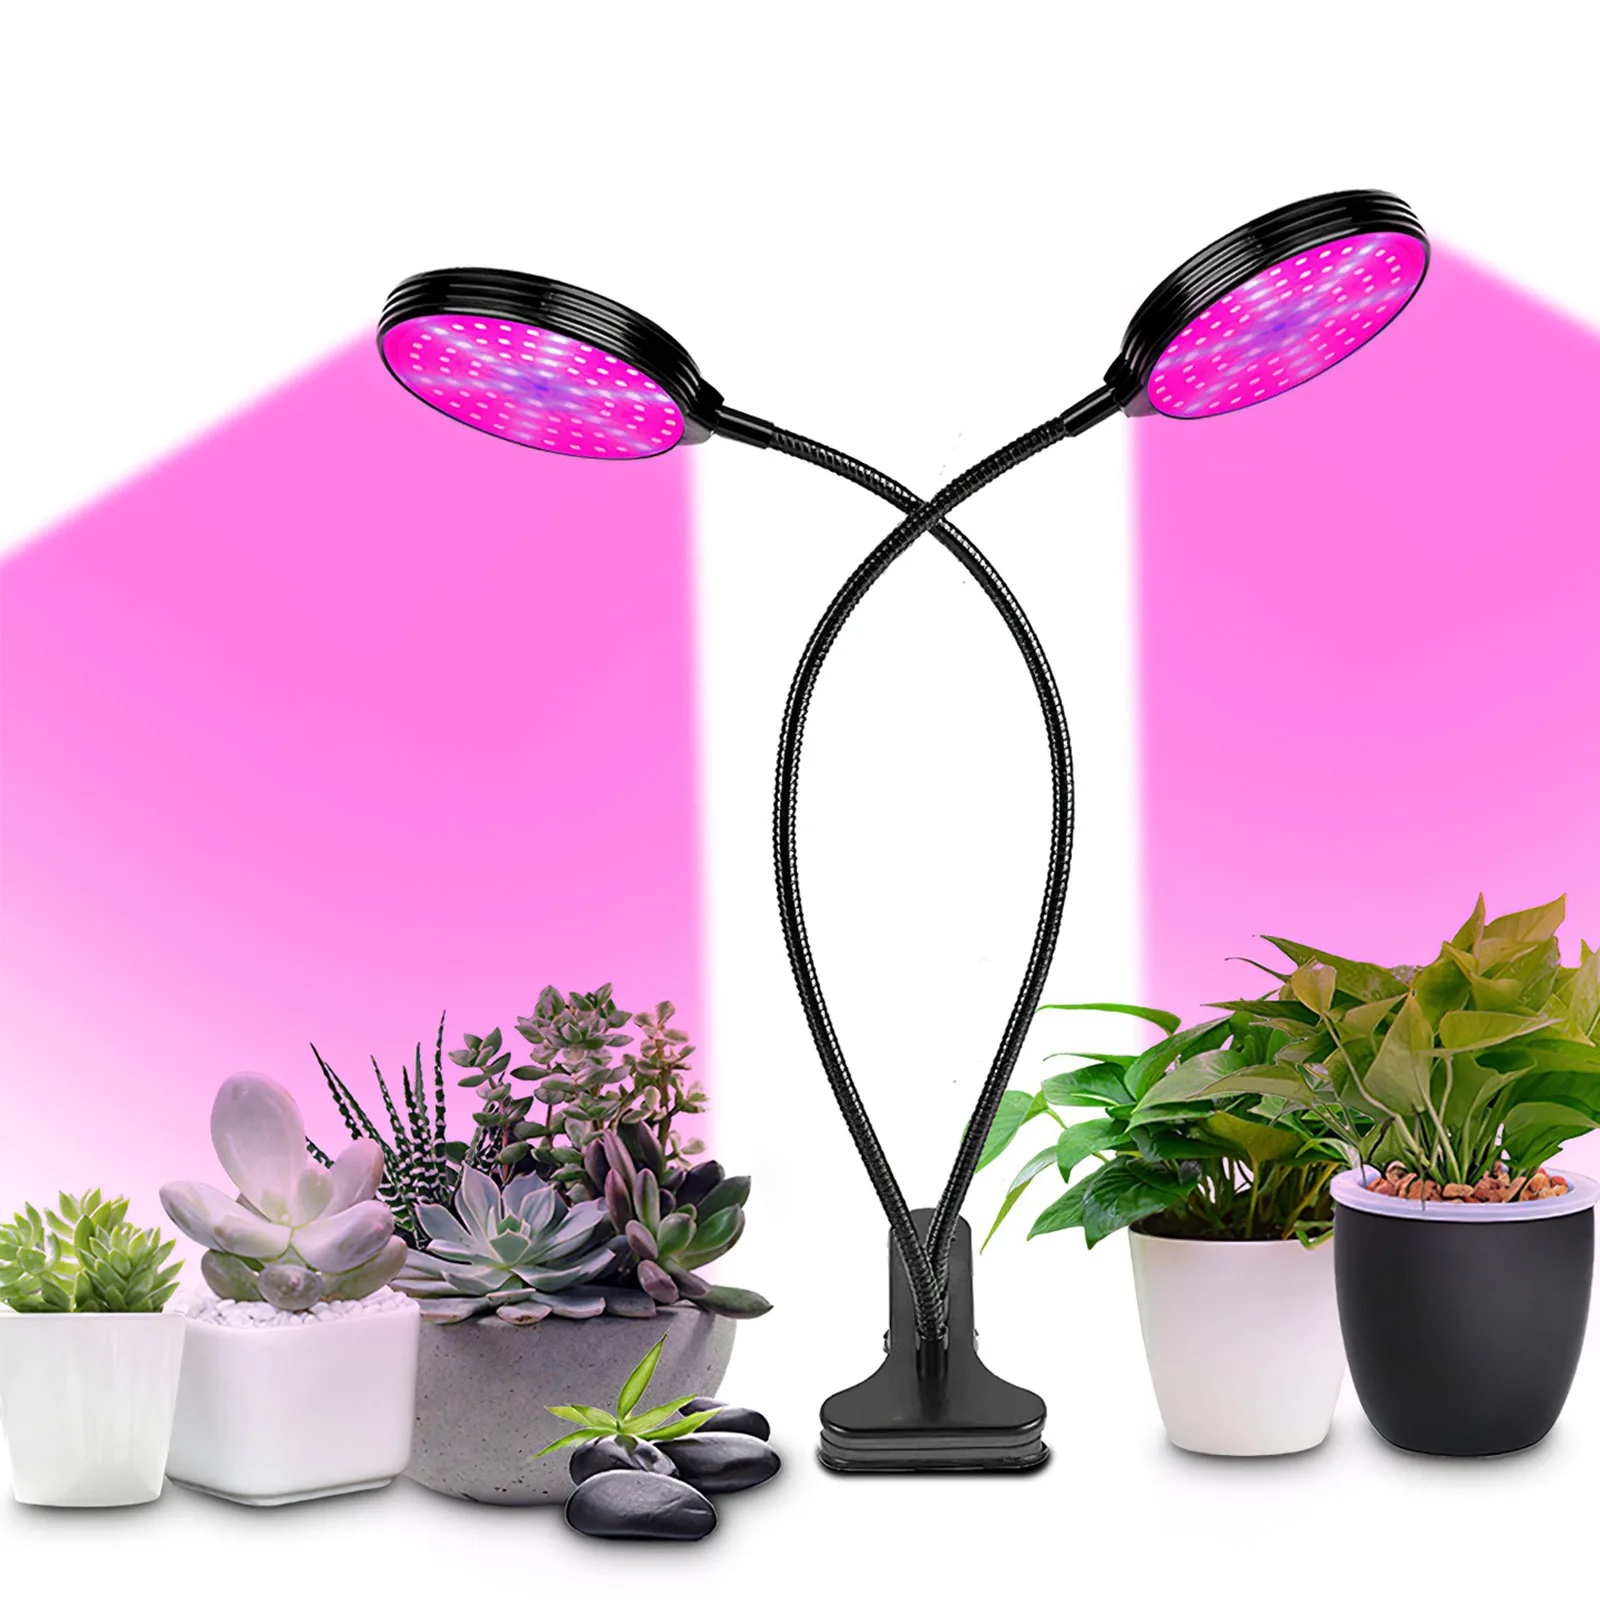 

Лампа для выращивания растений, красный и синий свет, регулируемая яркость, функция таймера, питание от USB, для комнатных растений